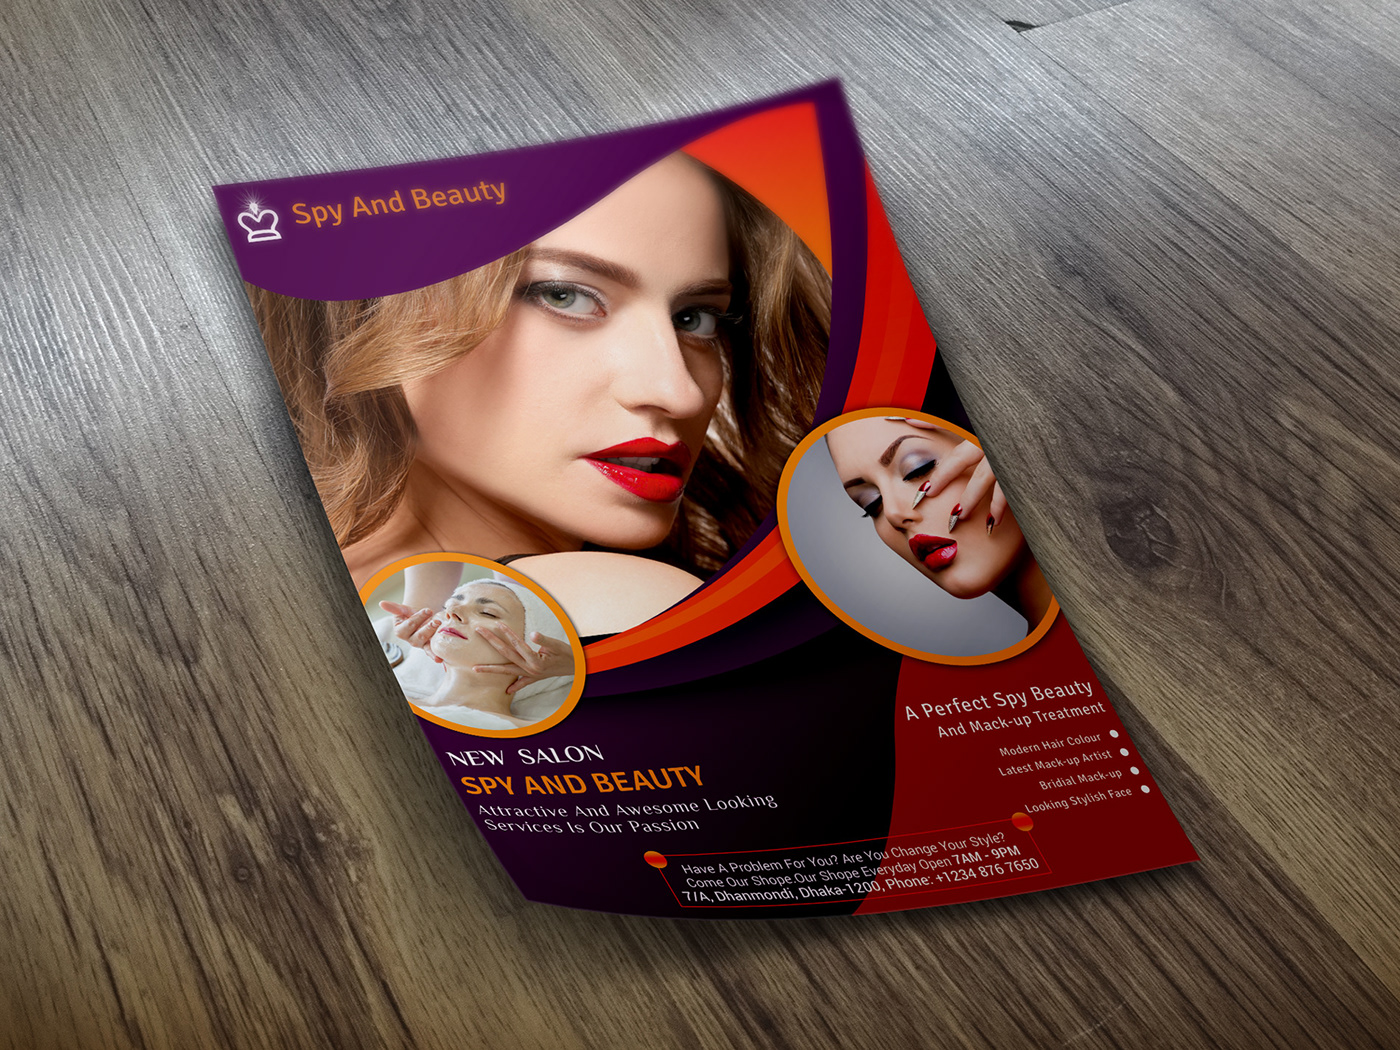 SPA AND BEAUTY flyer Spa beauty beauty salon skinn therapy spa poster Spa Promotion beauty care spa flyer